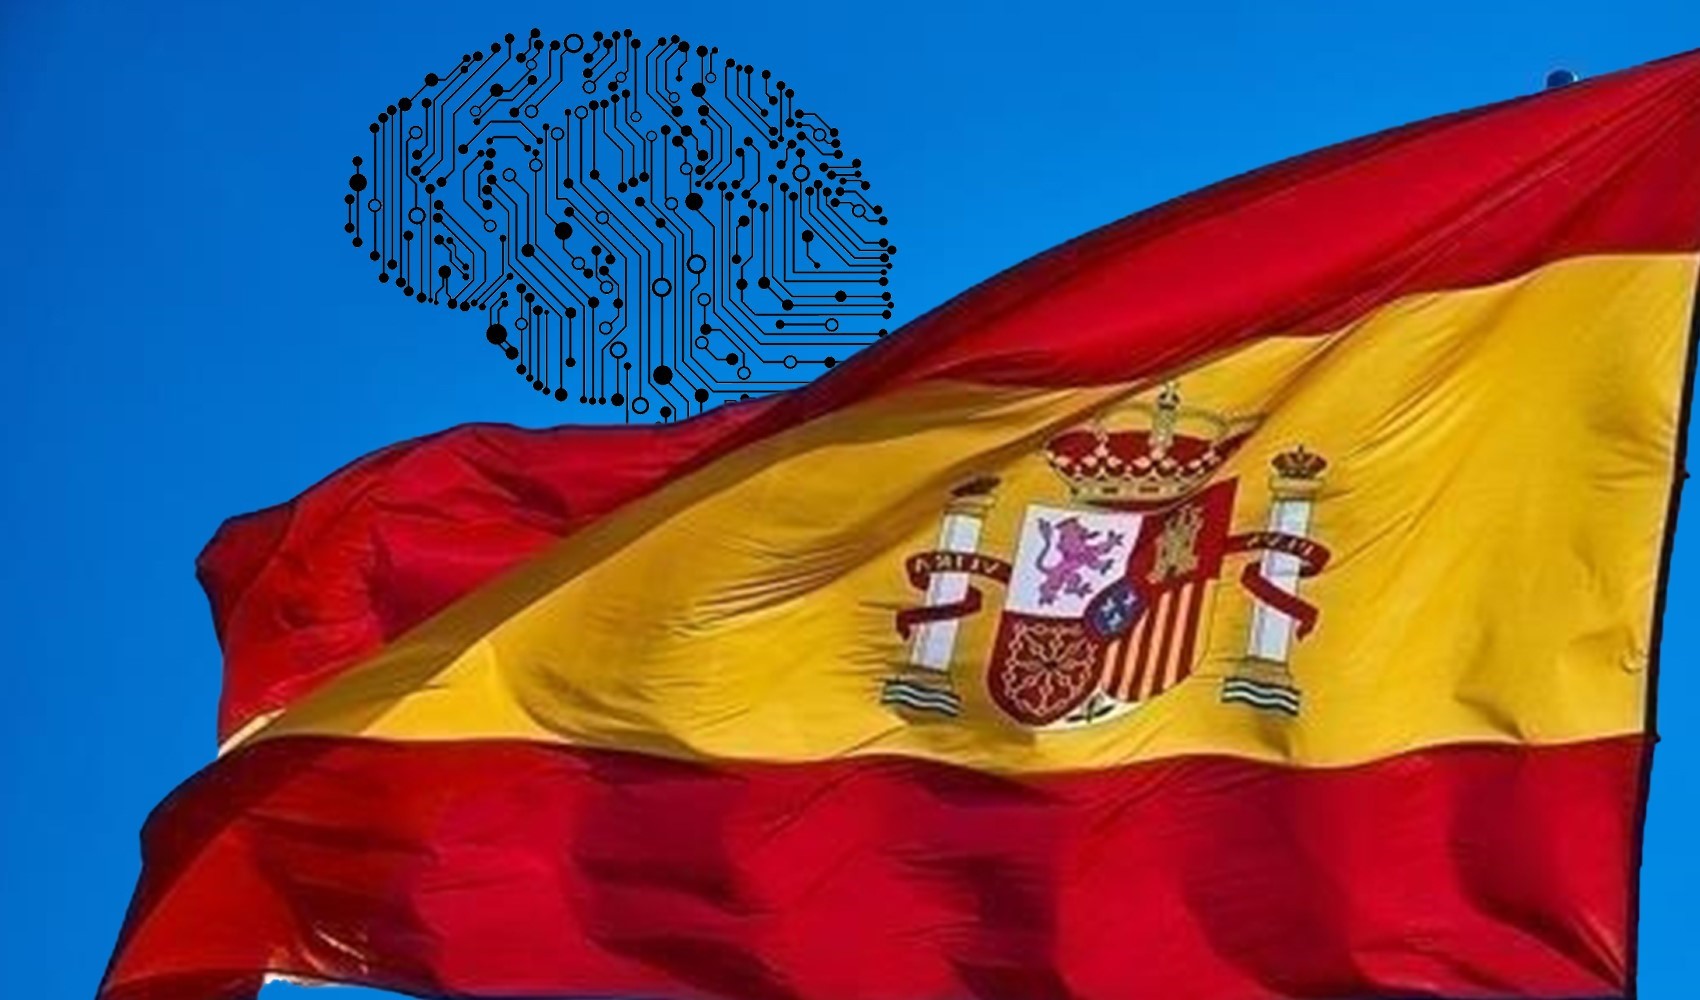 İspanya'dan yapay zeka hamlesi: Büyük dil modeli geliştiriliyor!